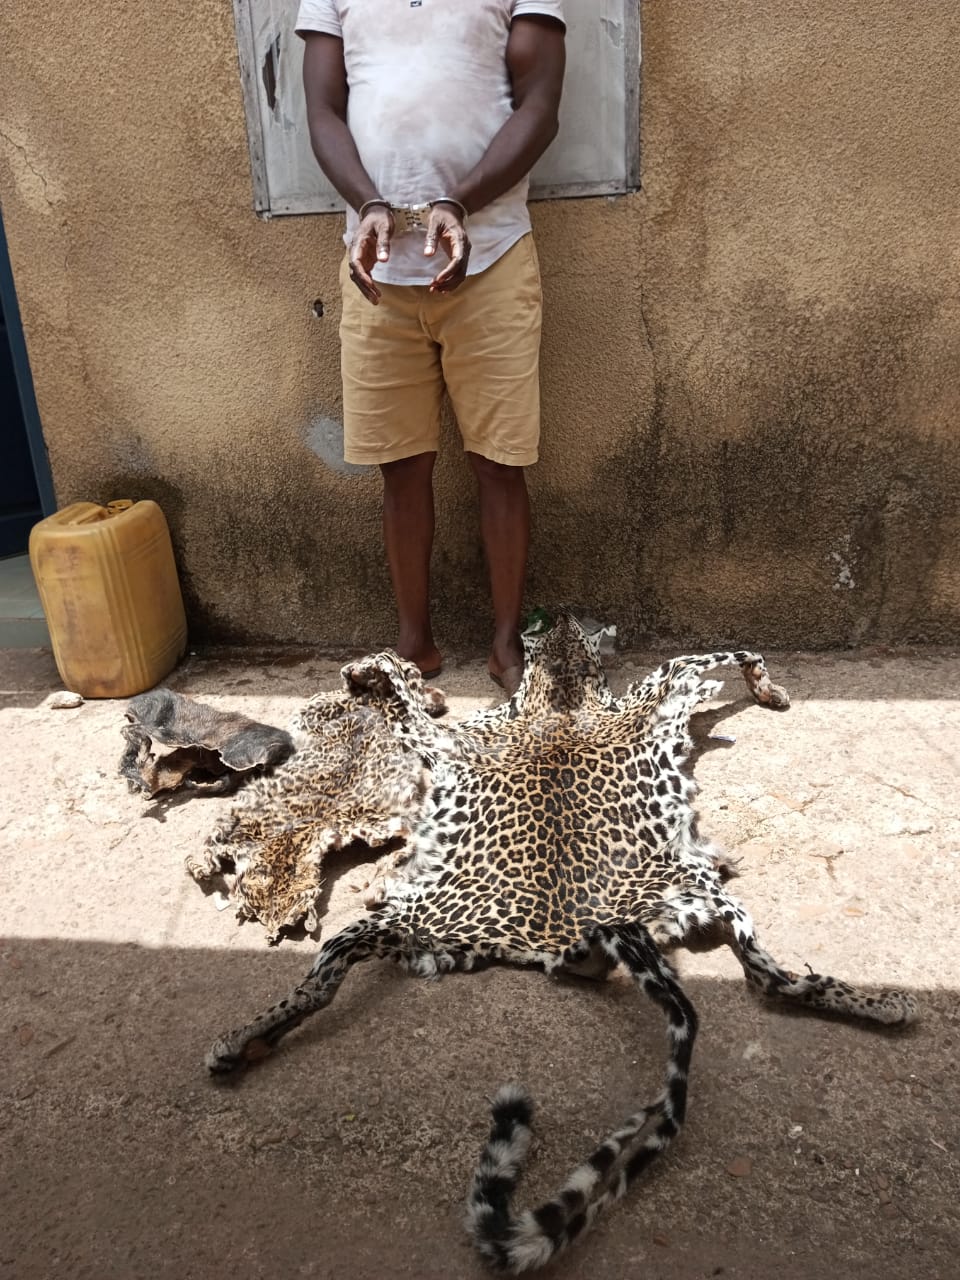 Côte d’Ivoire: Un présumé trafiquant d’animaux interpellé avec 2 peaux de panthères à Soubré